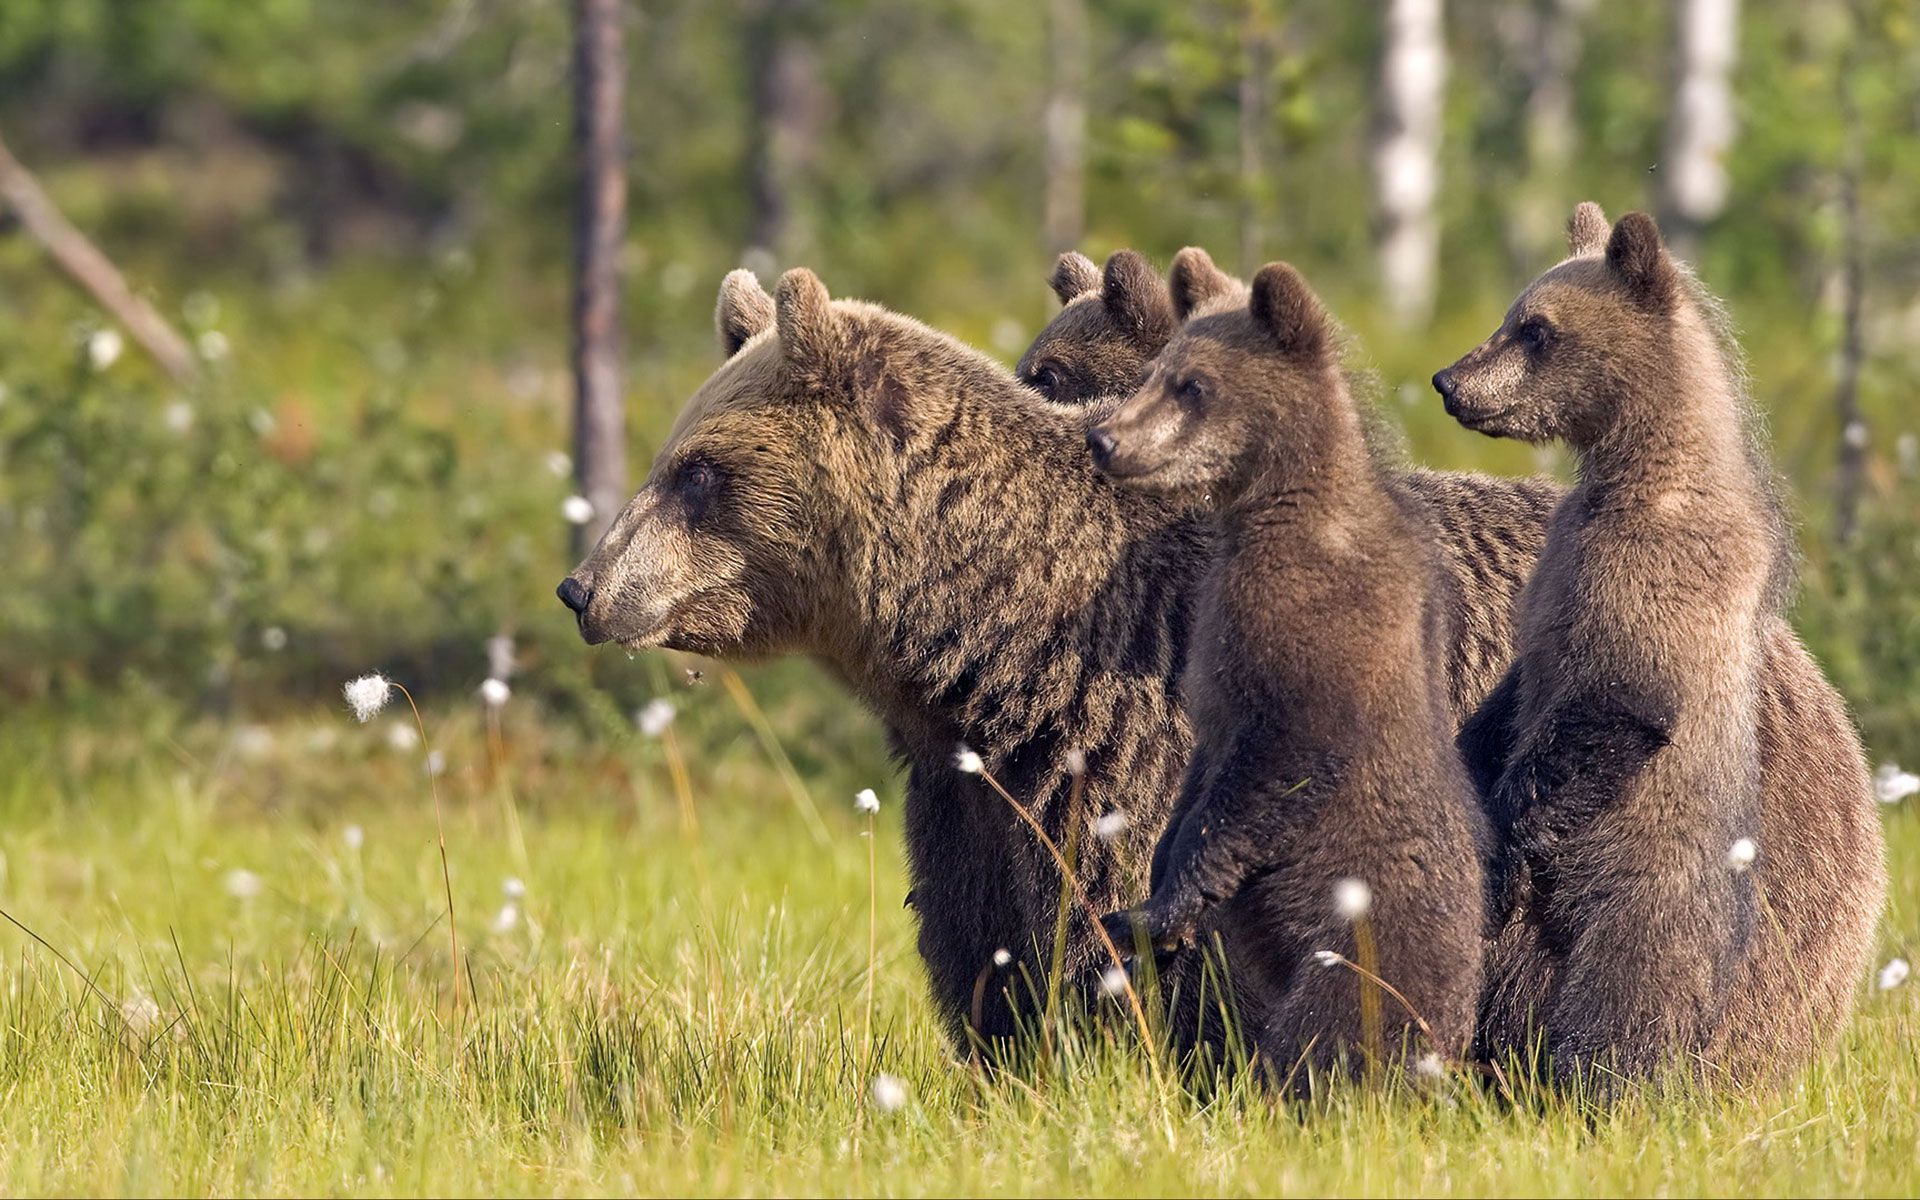 animales fondos de pantalla hd descarga gratuita,oso café,oso grizzly,fauna silvestre,animal terrestre,oso